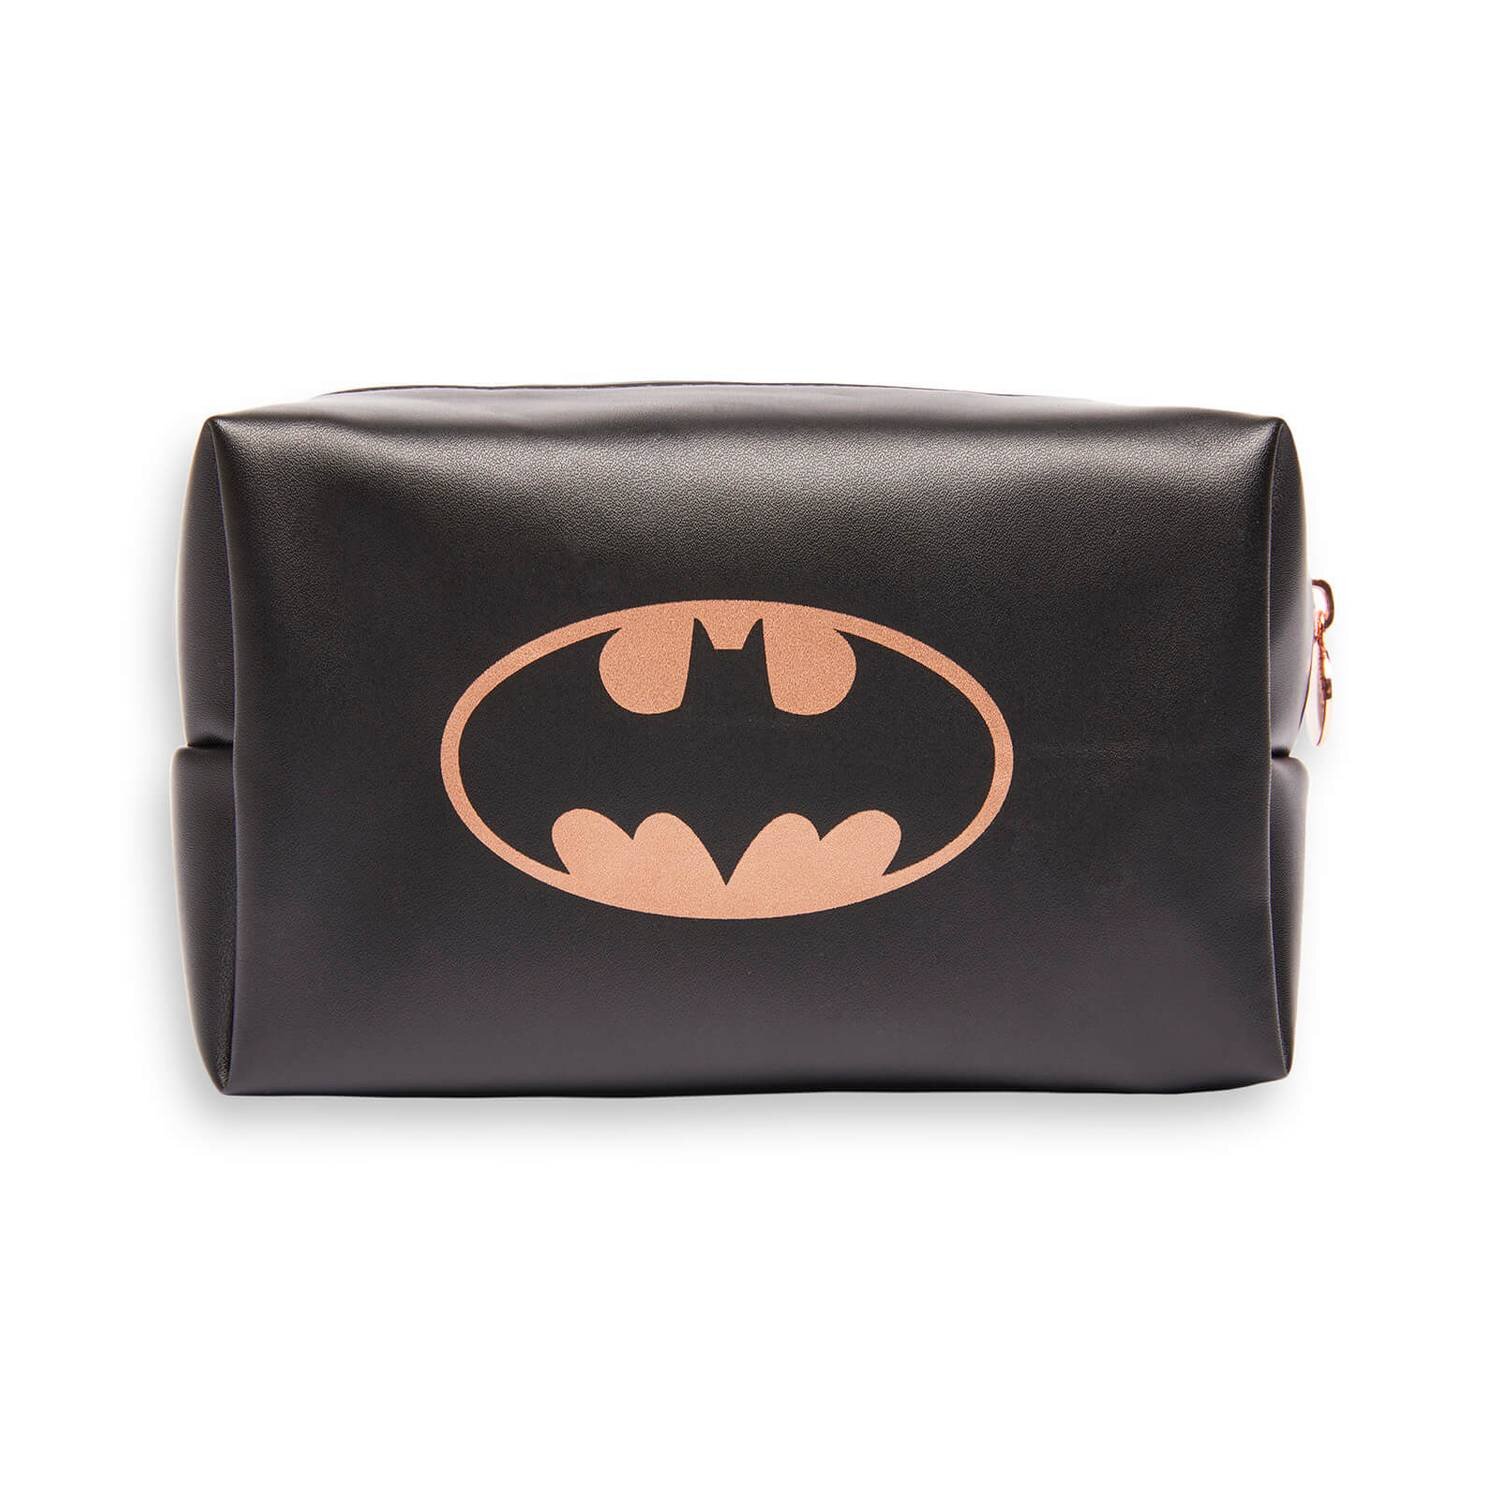 Batman™ X Revolution Makeup Bag